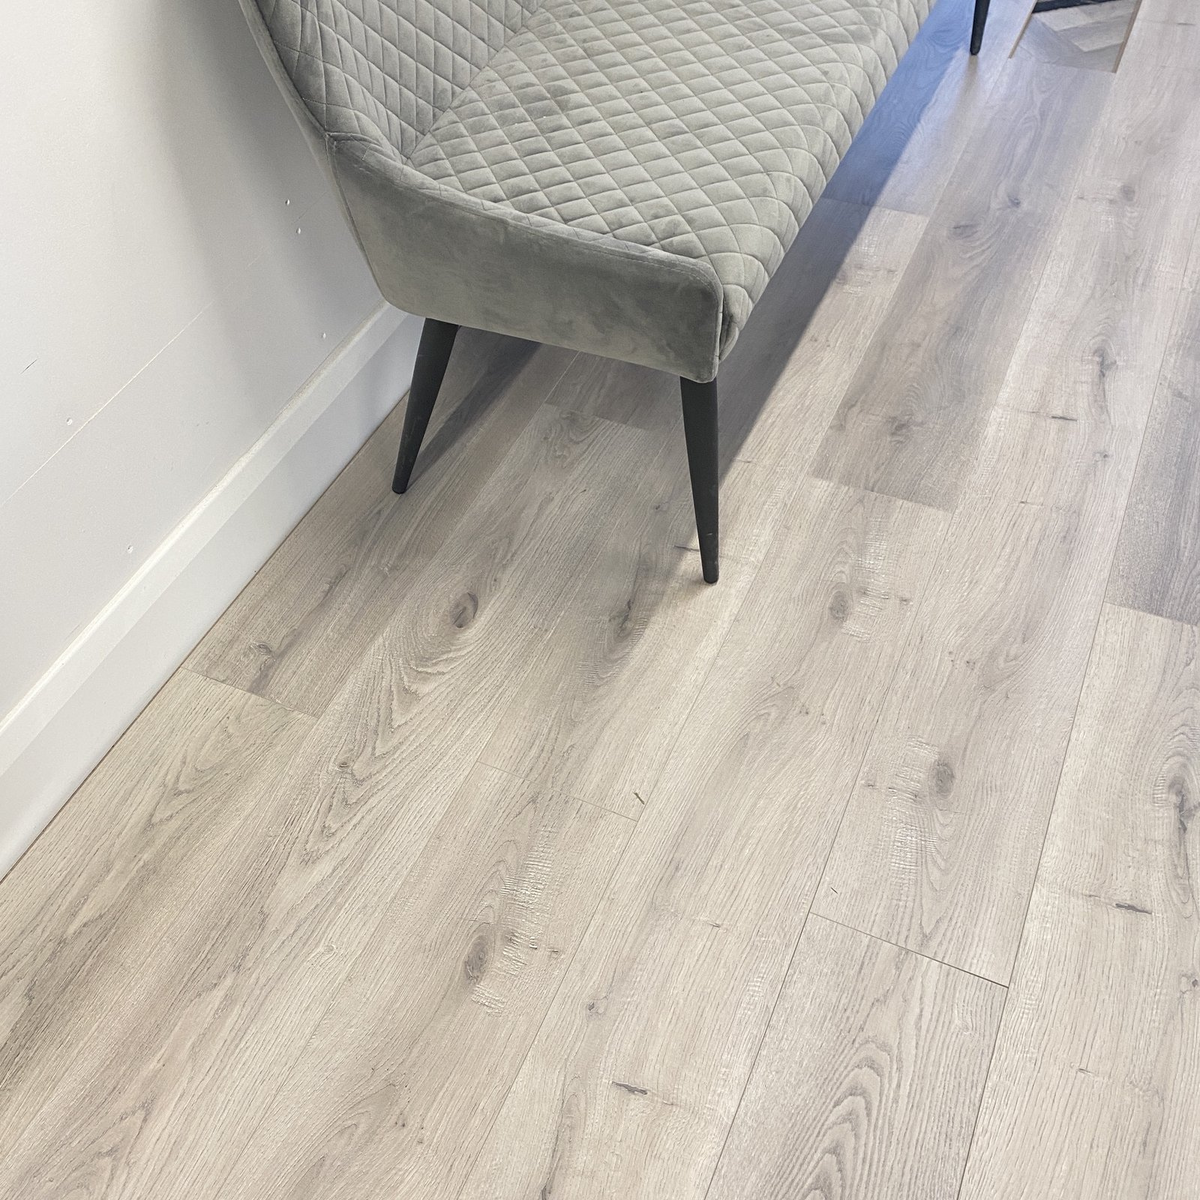 Laminate Plank Floor Light Grey 12mm 8mm Flooring Home Interior Design Kitchen Living Room